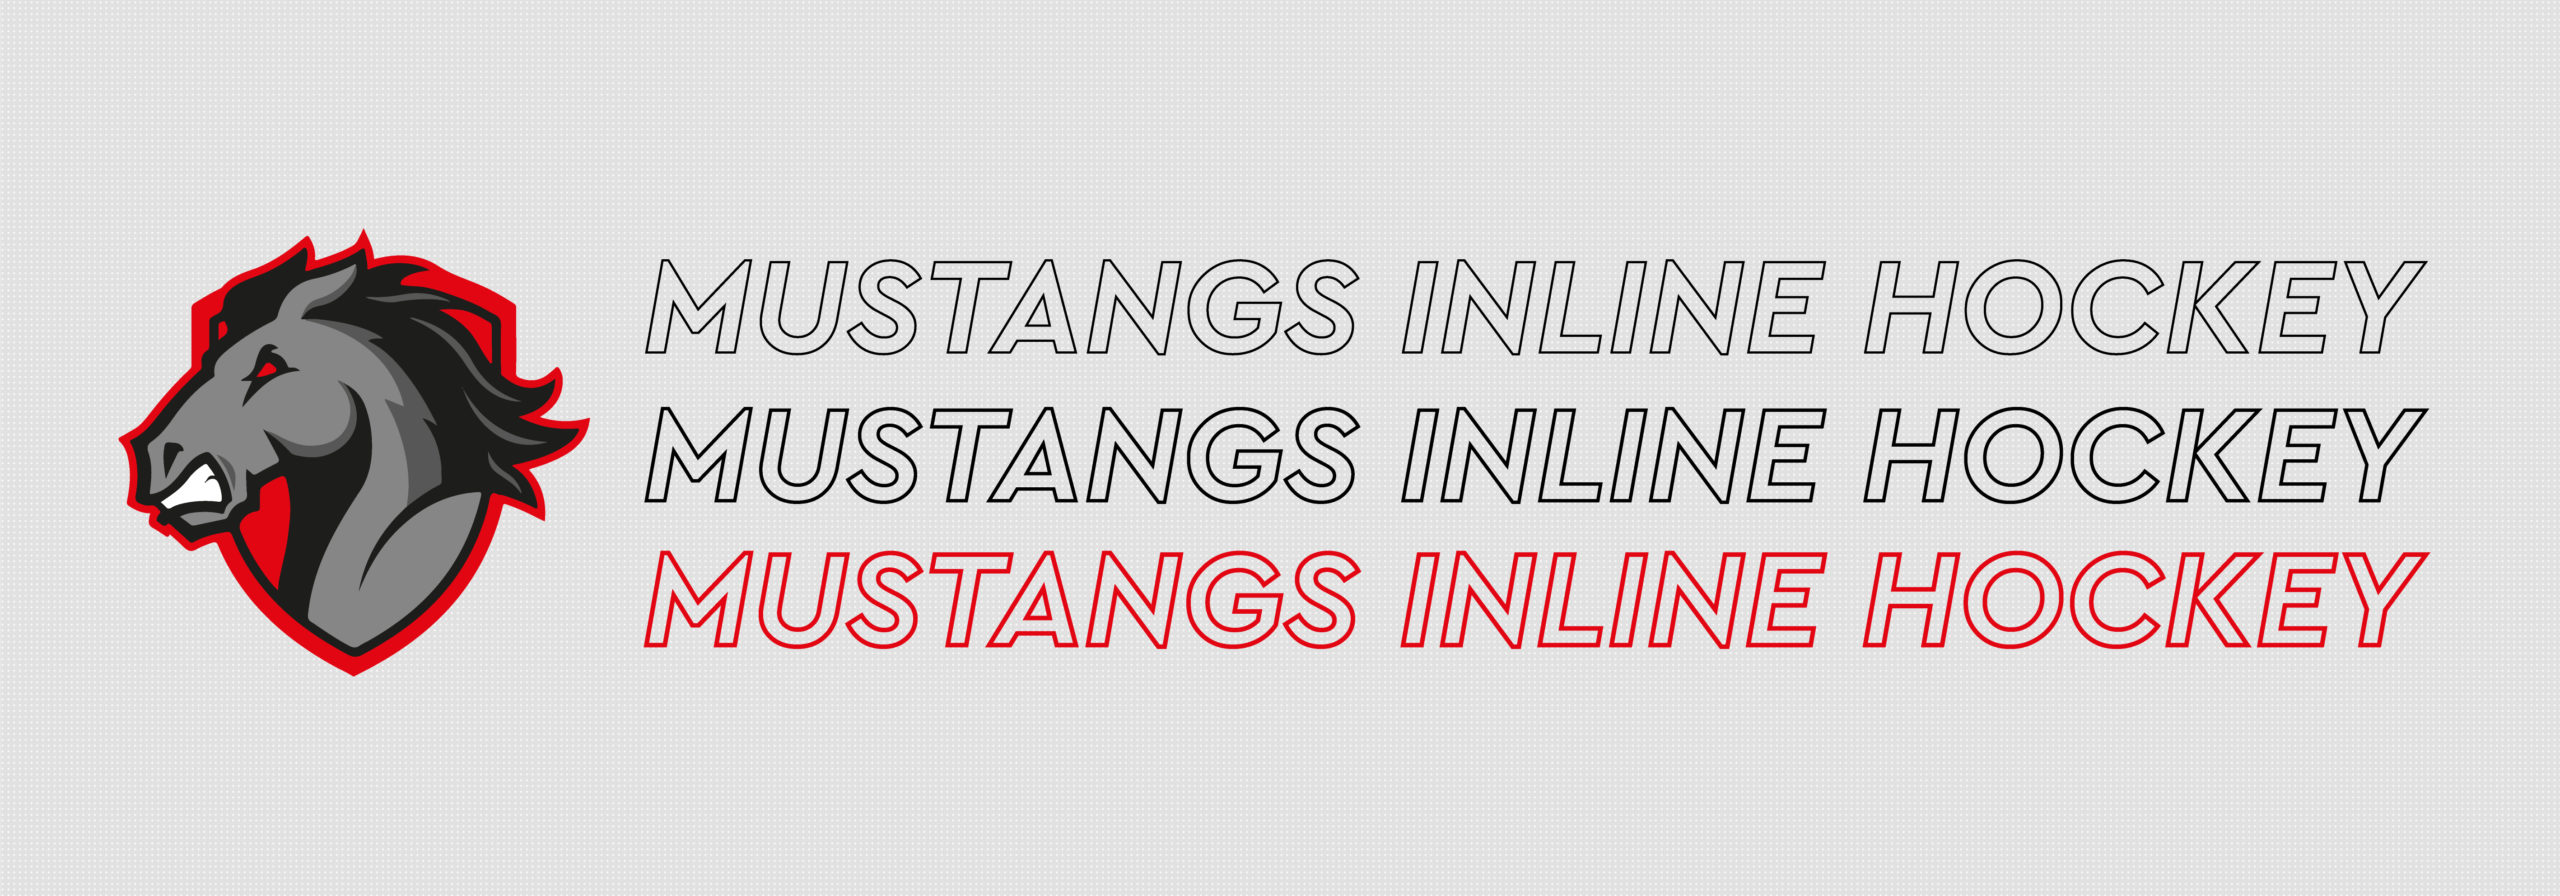 Mustangs Inline Hockey T-Shirt